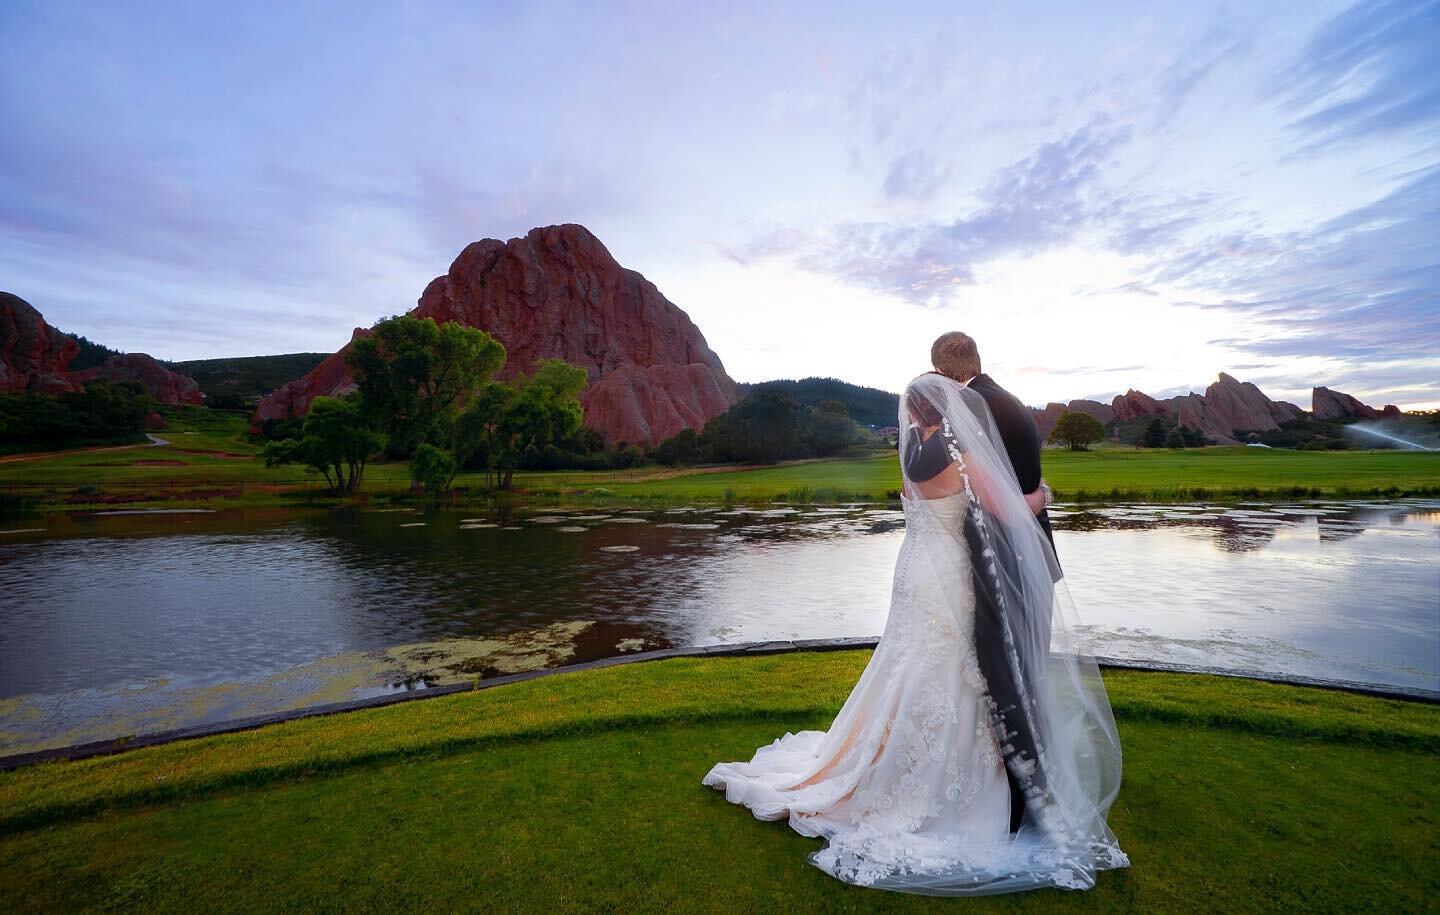 A beautiful day in Colorado.  #coloradowedding #redrocks #weddingphotography #weddingdress #weddingday #marylandweddingphotographer #marylandweddings #bride #weddinginspiration #instawedding #weddingvenue #weddingideas #weddingseason #mountians #wedd